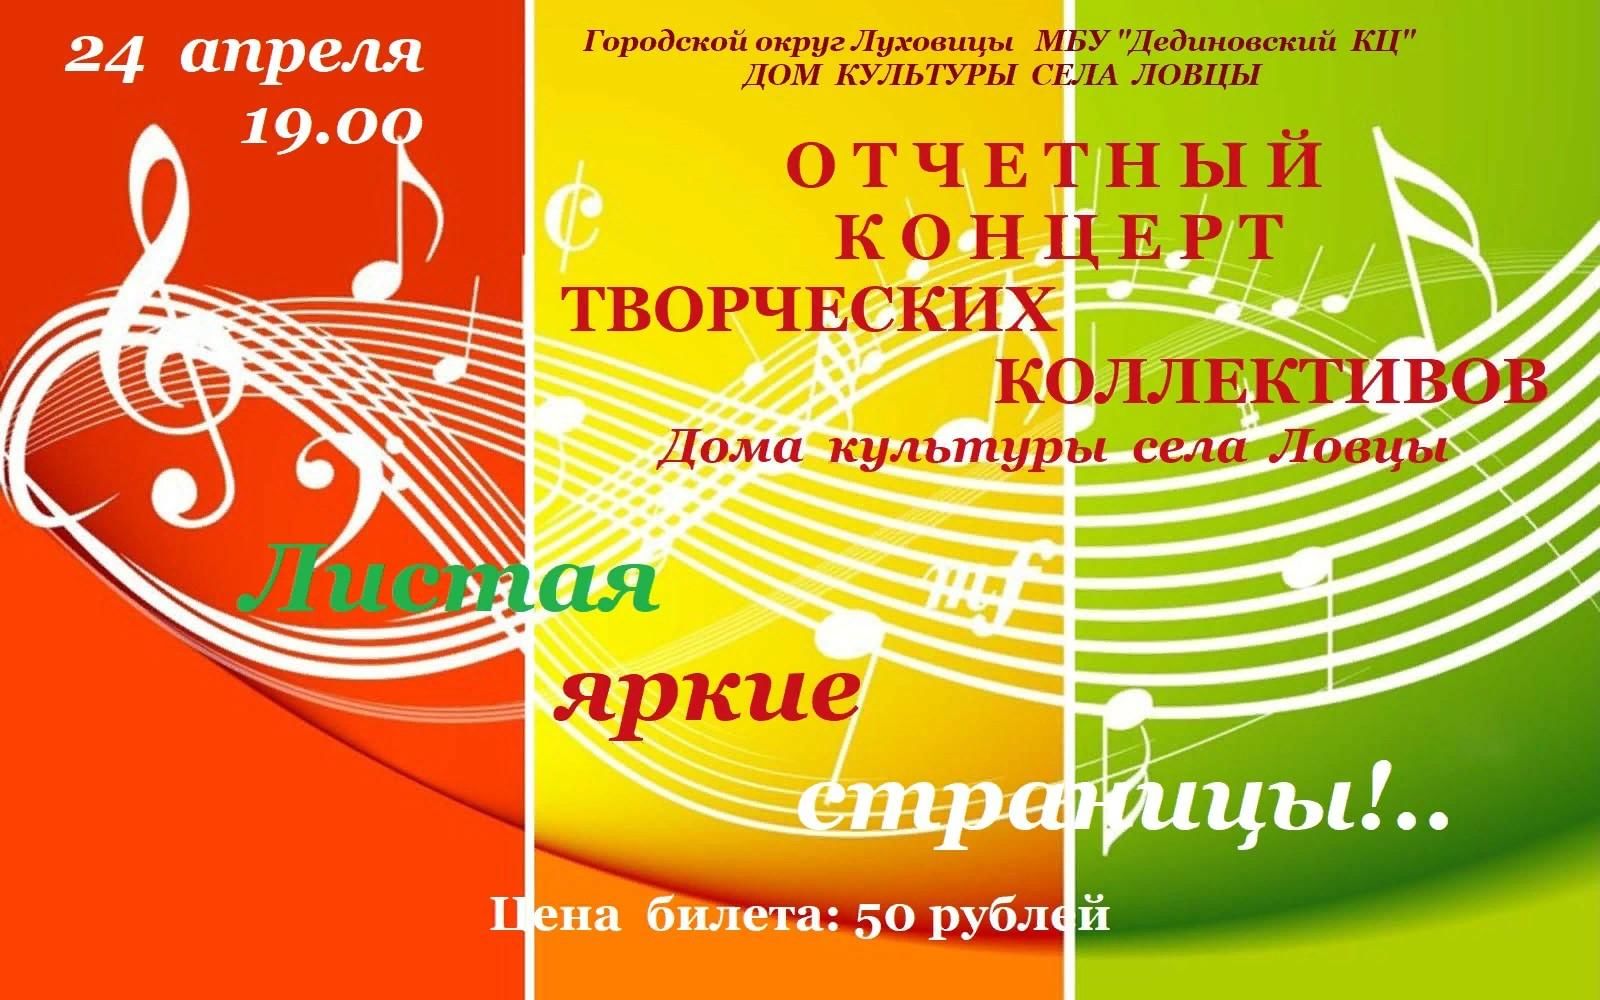 Сценарий концерта творческих коллективов